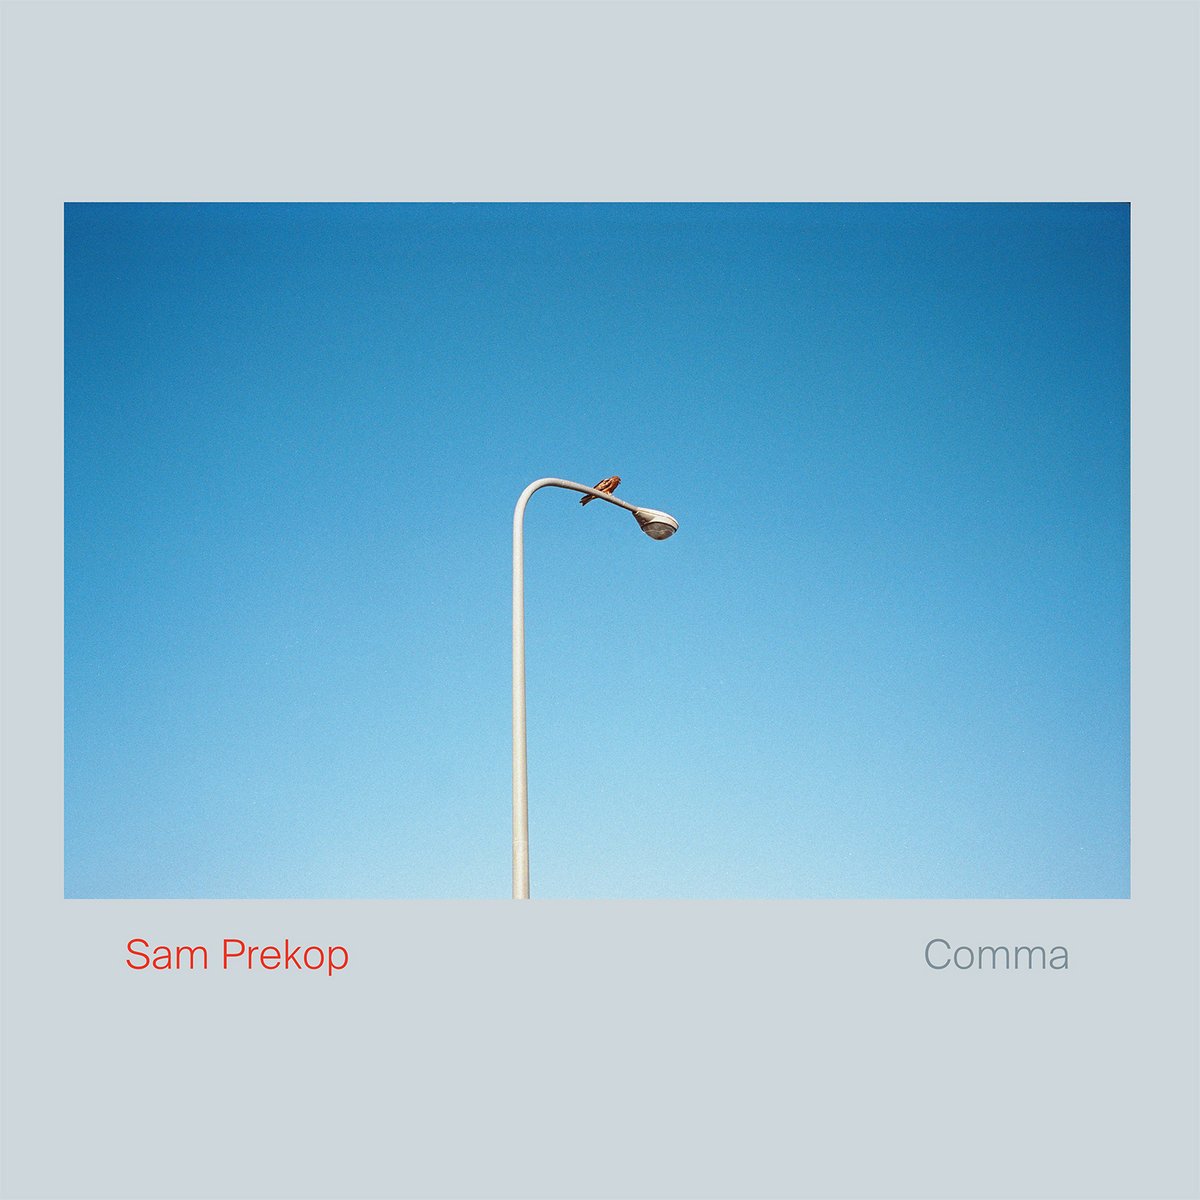 Sam Prekop "Comma"